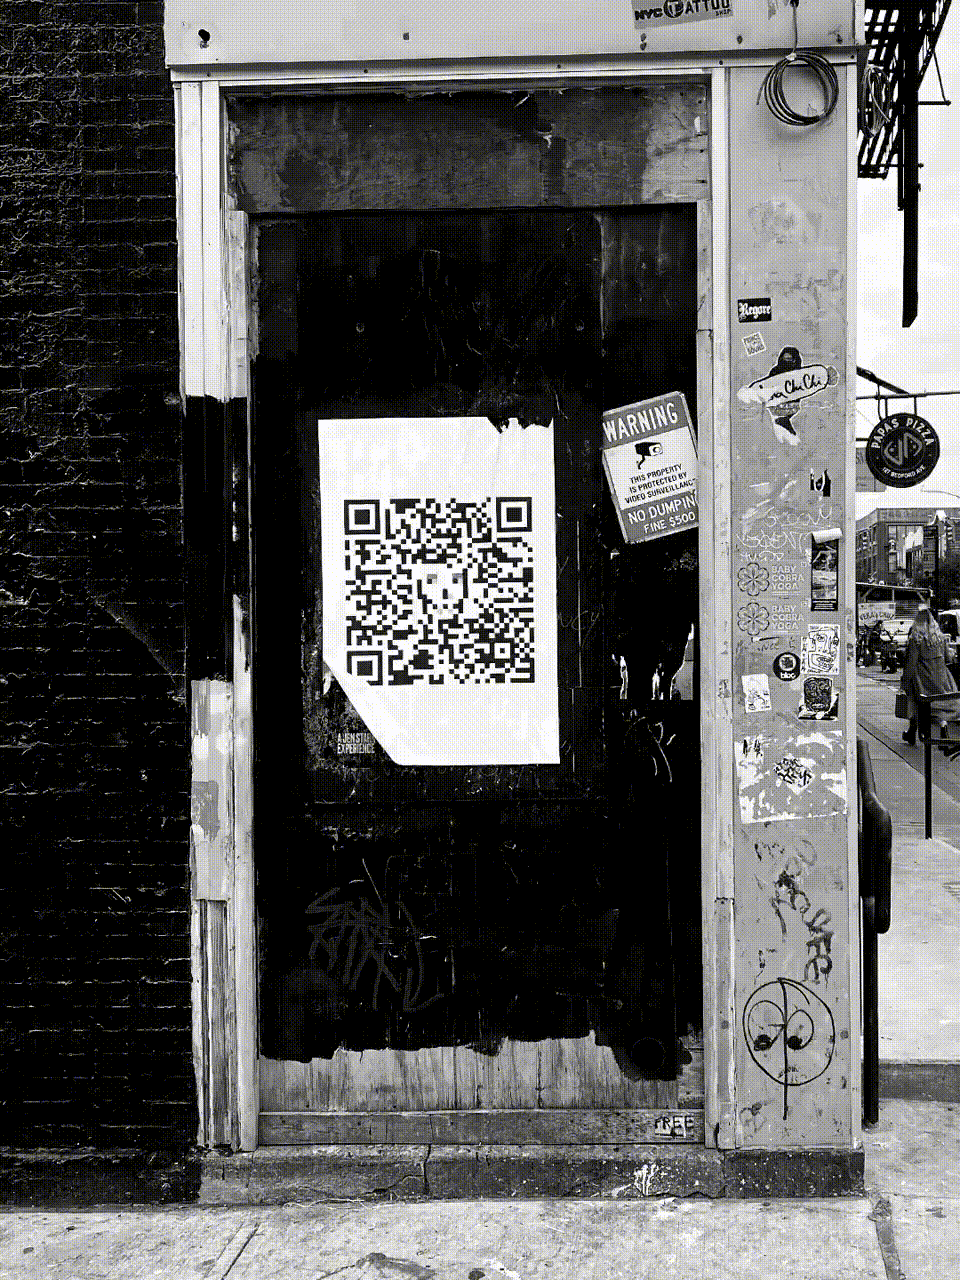 Photos of Skeleton Key 003 in Brooklyn, NY.